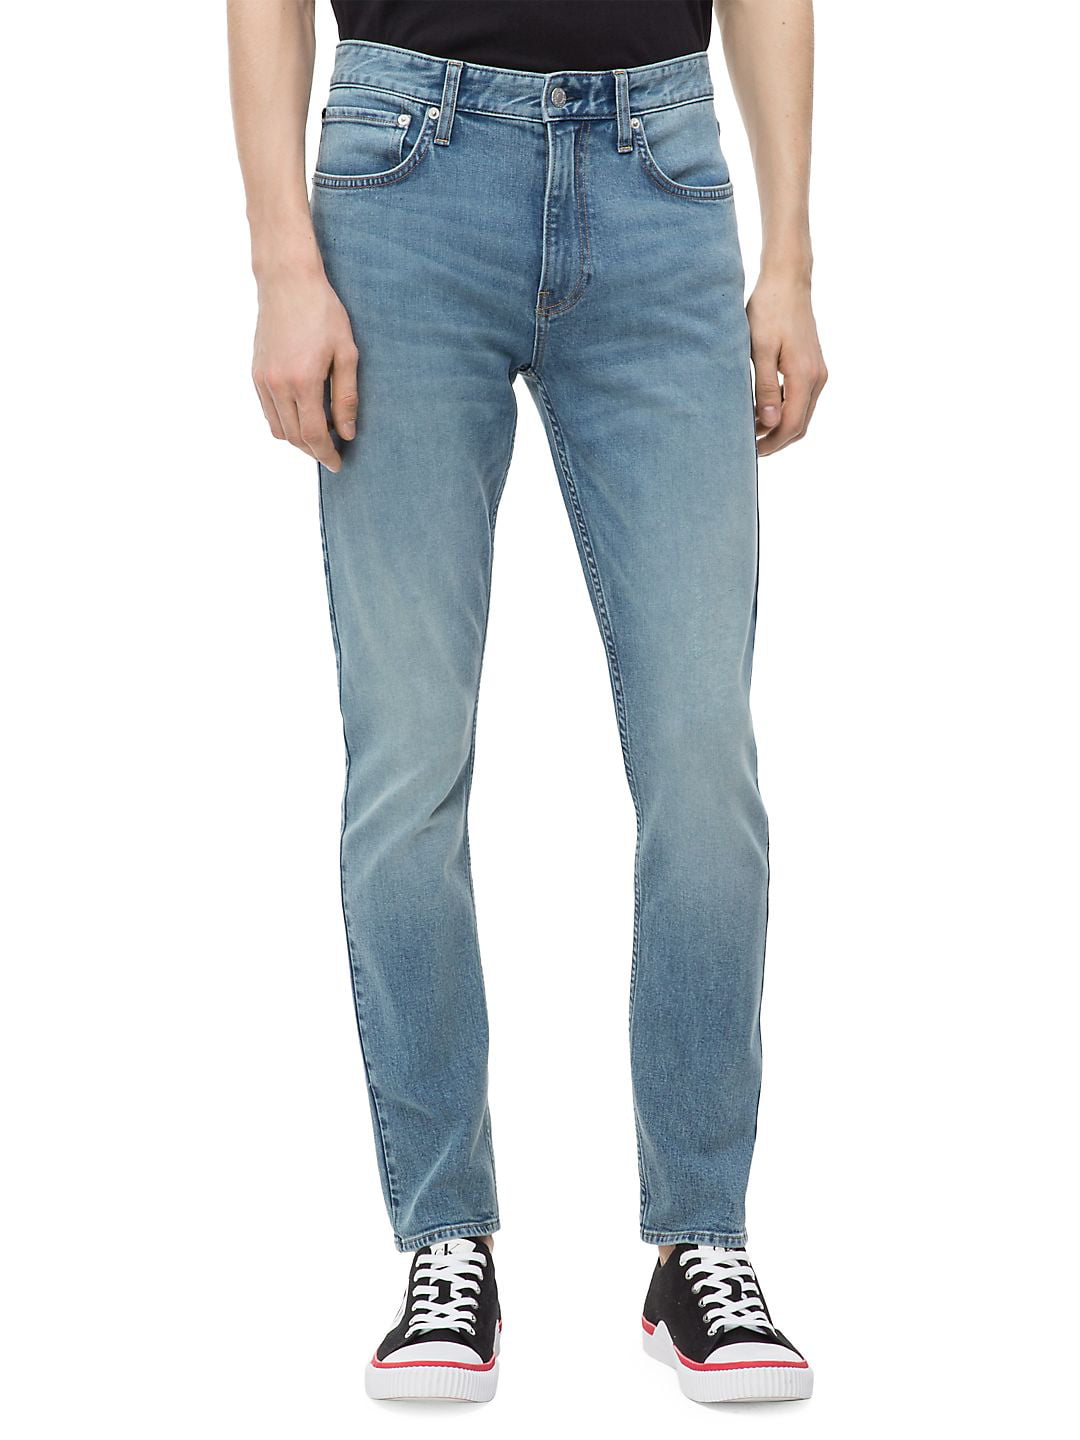 CKJ 035 Straight-Fit Jeans - Walmart.com